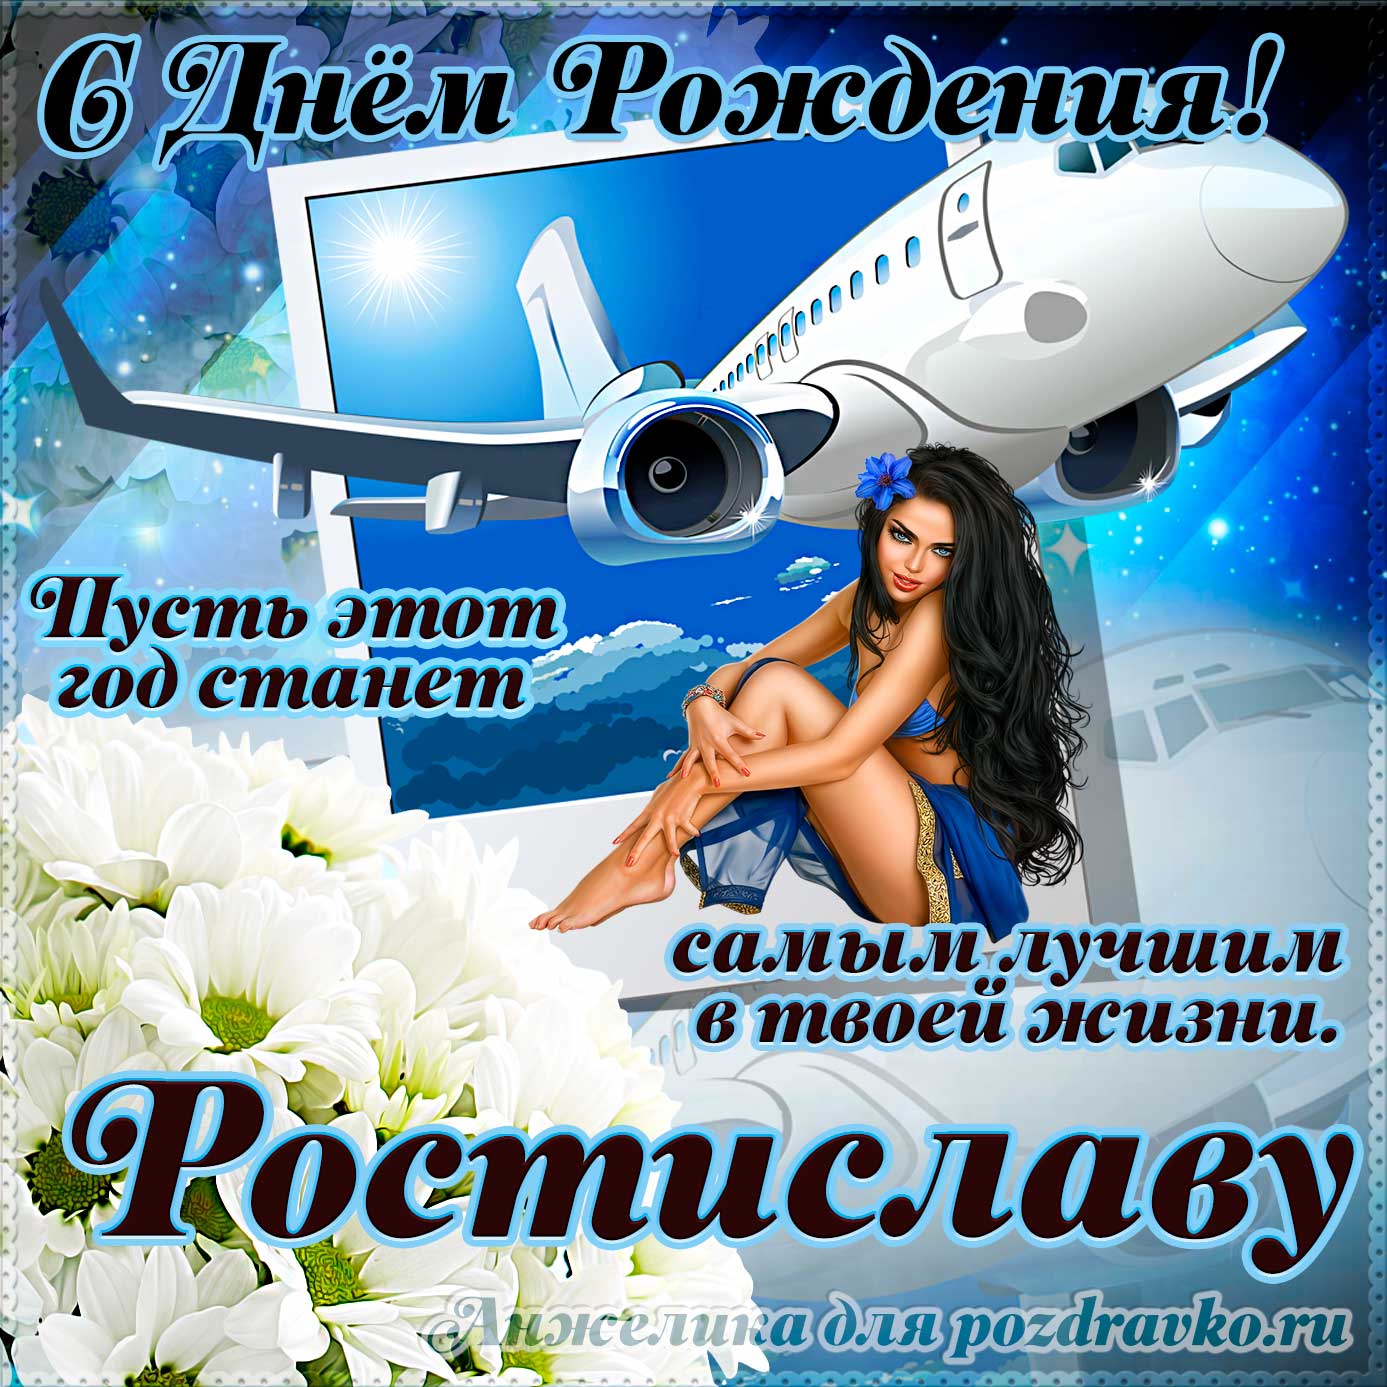 Открытка - Ростиславу на день рождения с красивым пожеланием самолетом и девушкой. Скачать бесплатно или отправить картинку.